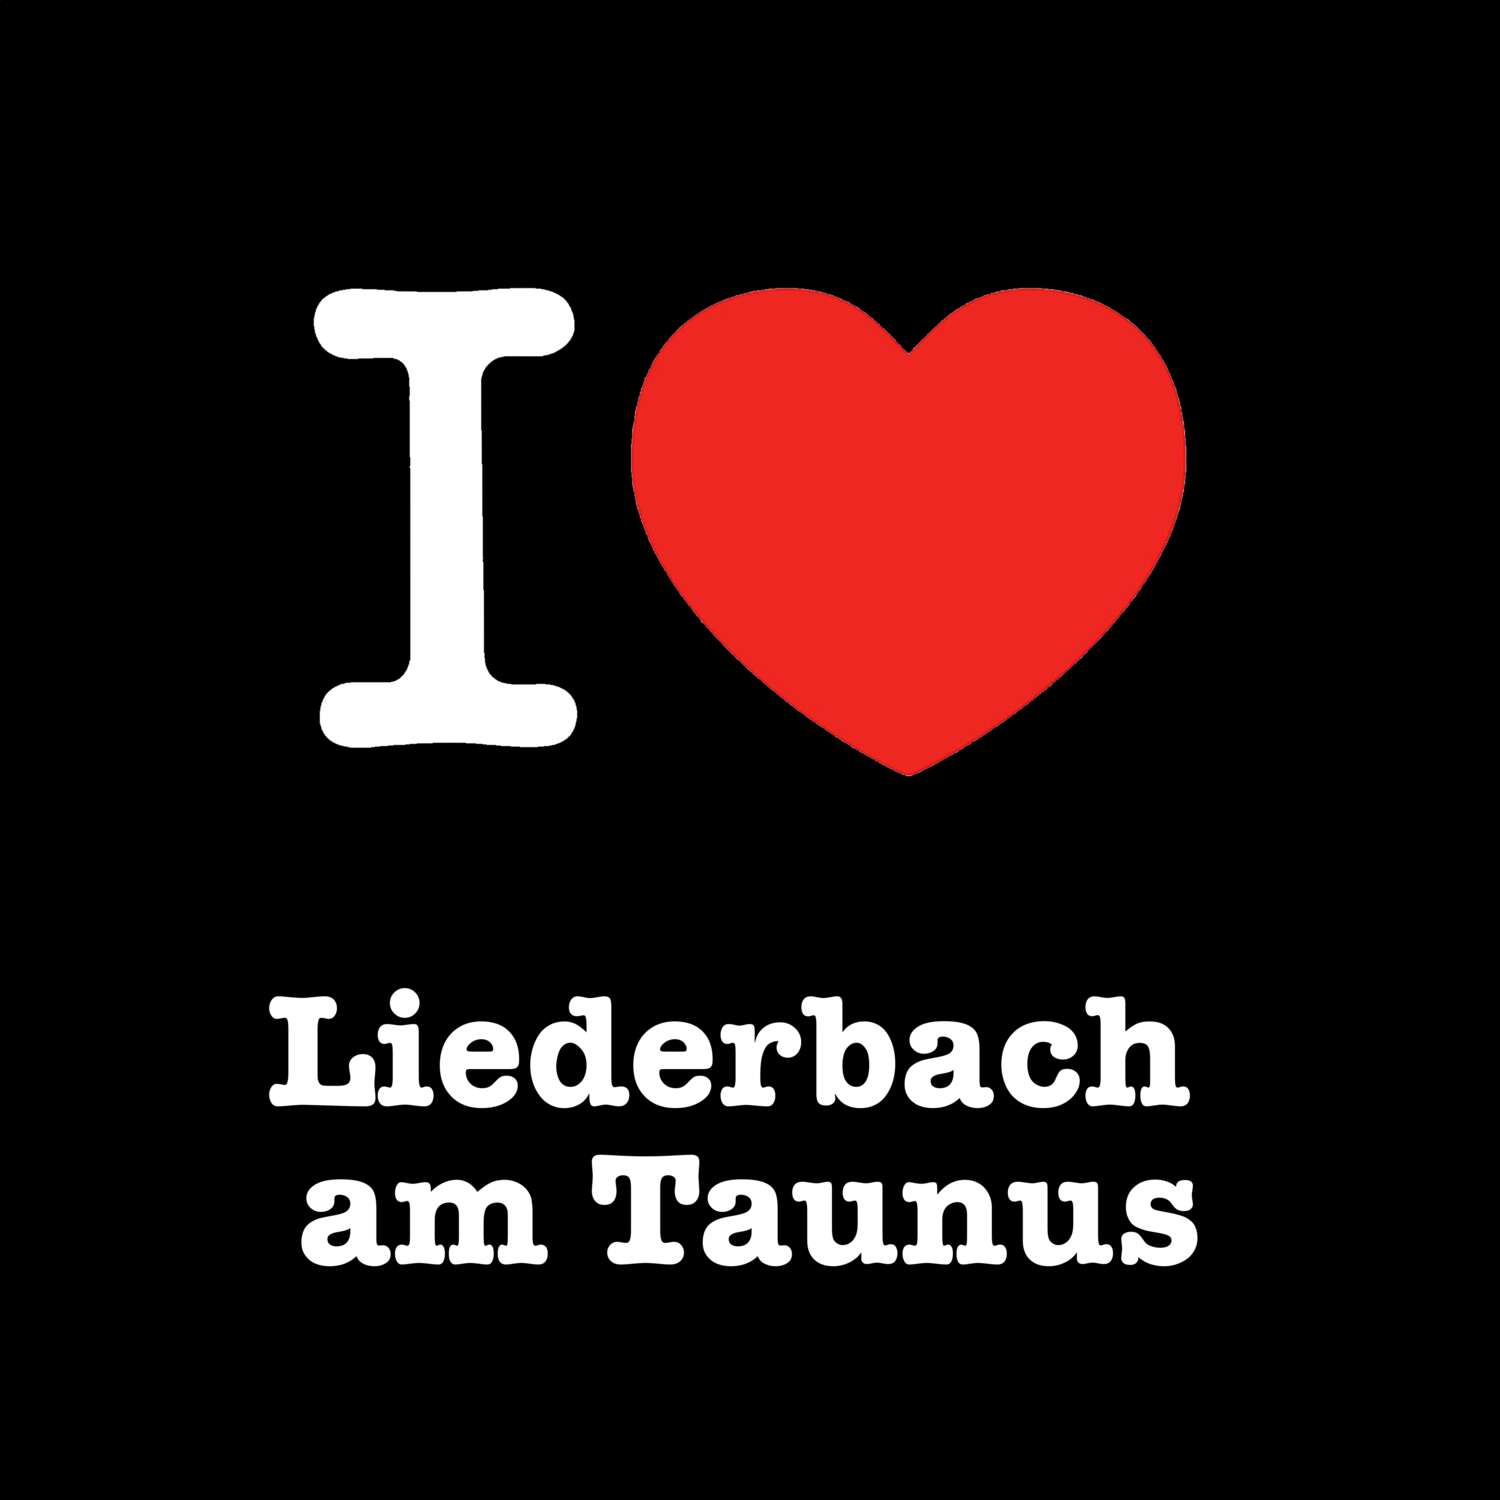 Liederbach am Taunus T-Shirt »I love«